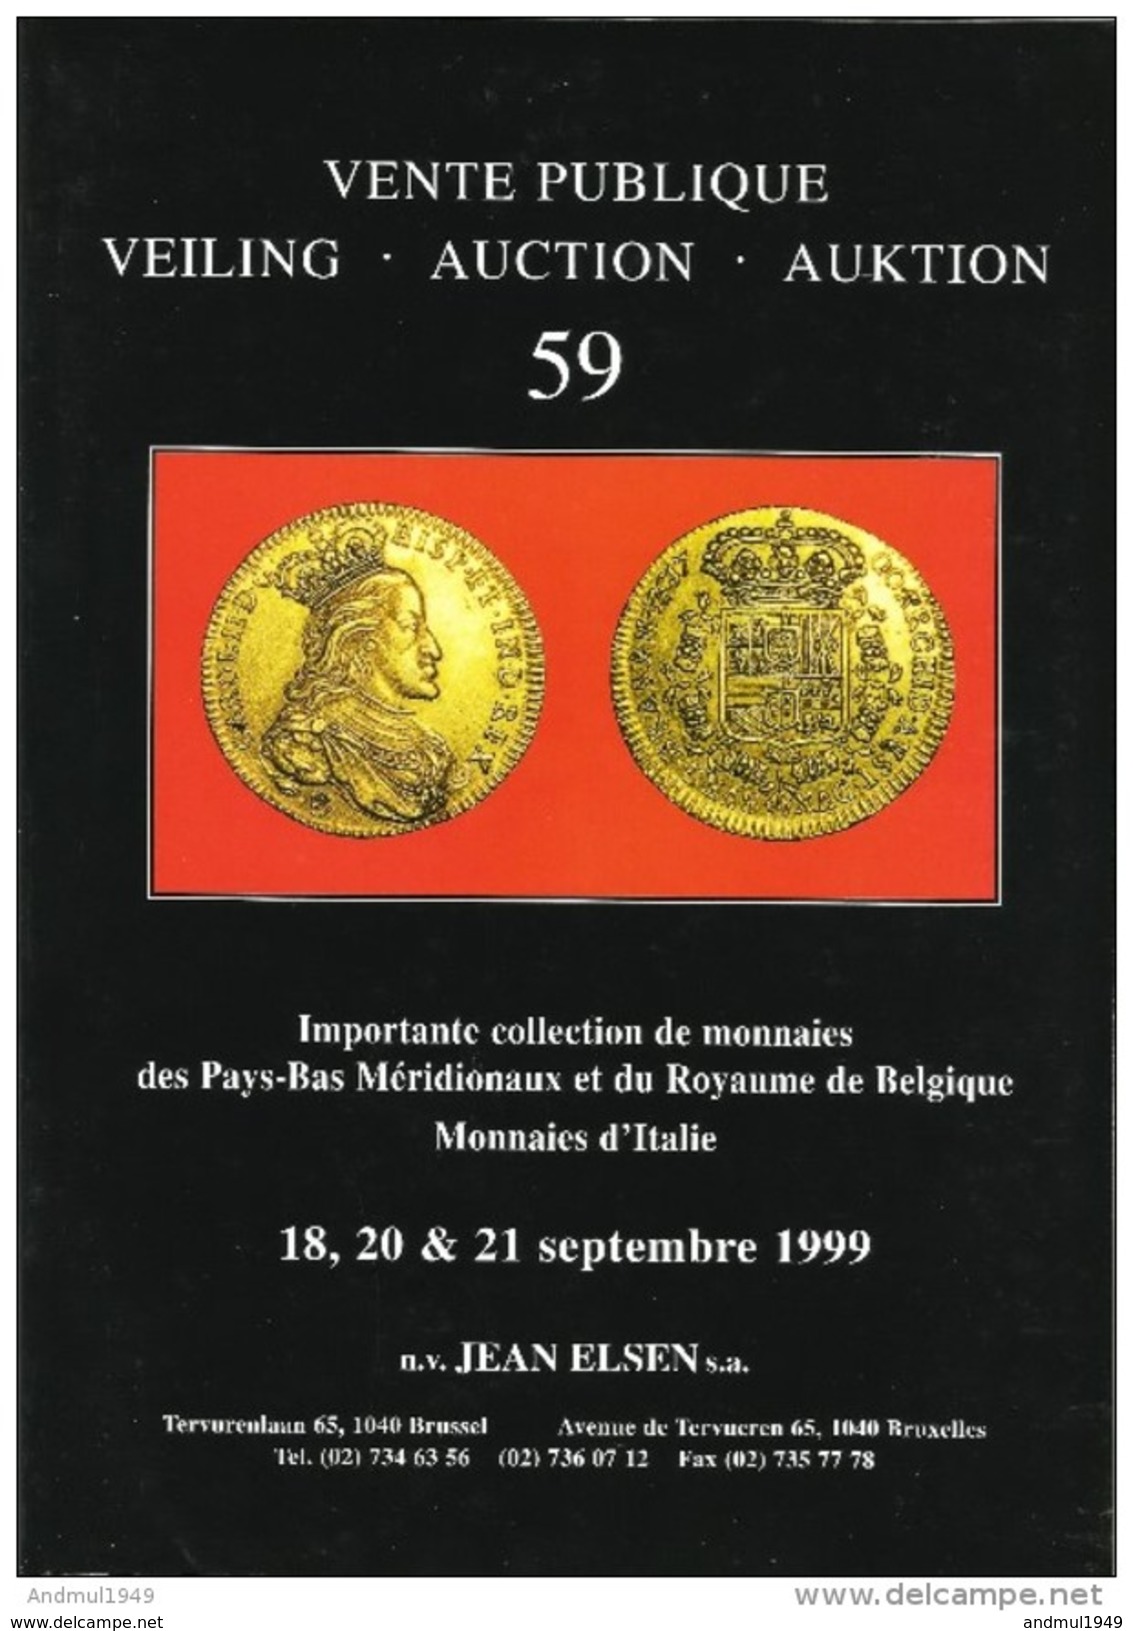 Catalogue Vente Publique 59 J. ELSEN Septembre 1999 - Pays-Bas Méridionaux, Royaume De Belgique, Monnaies D'Italie - Livres & Logiciels